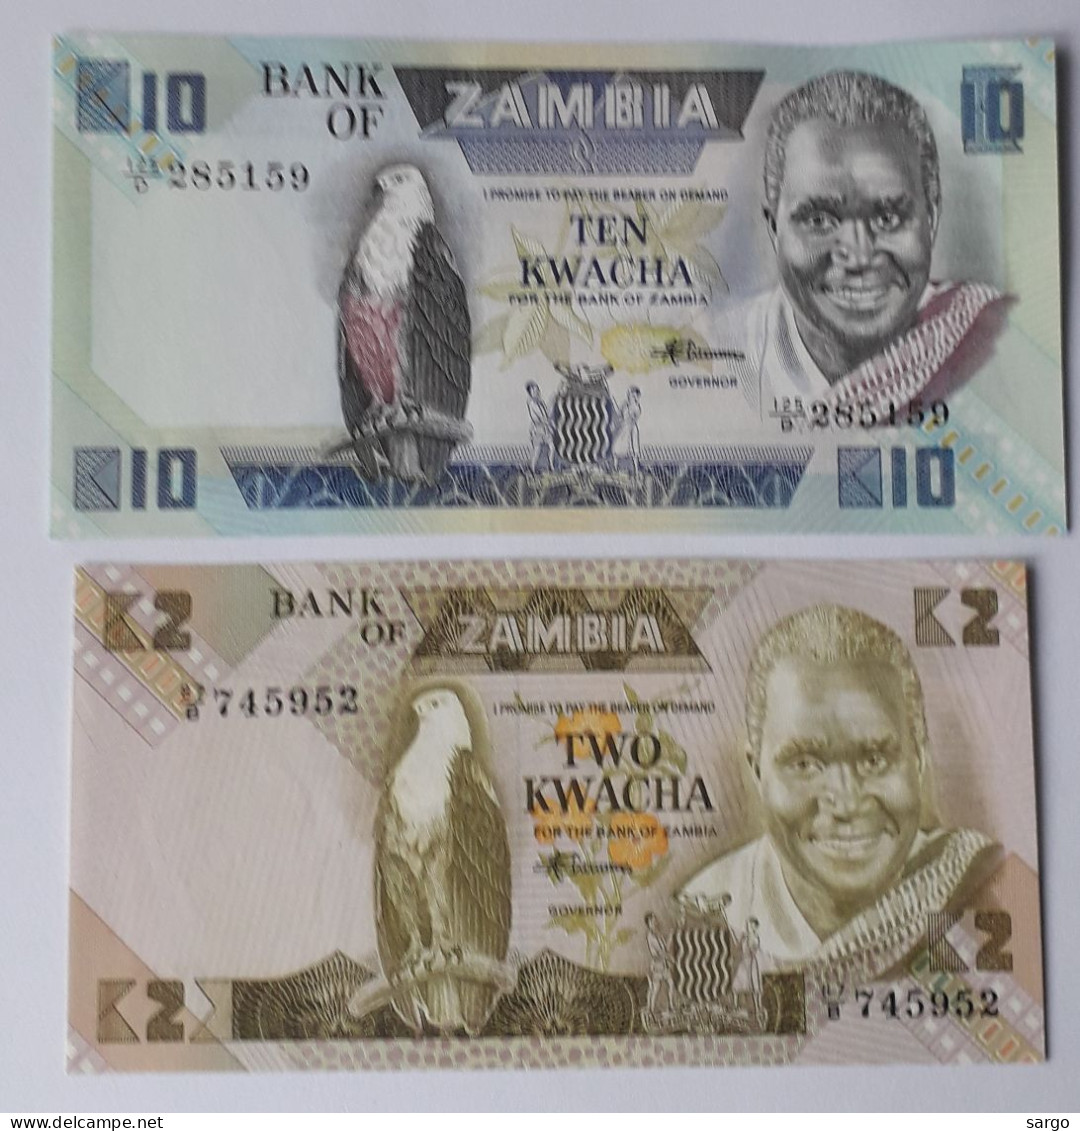 ZAMBIA - 2/10  KWACHA - P 24, P 26 (1980-1988) - 2 PCS  - UNC - BANKNOTES - PAPER MONEY - CARTAMONETA - - Zambia